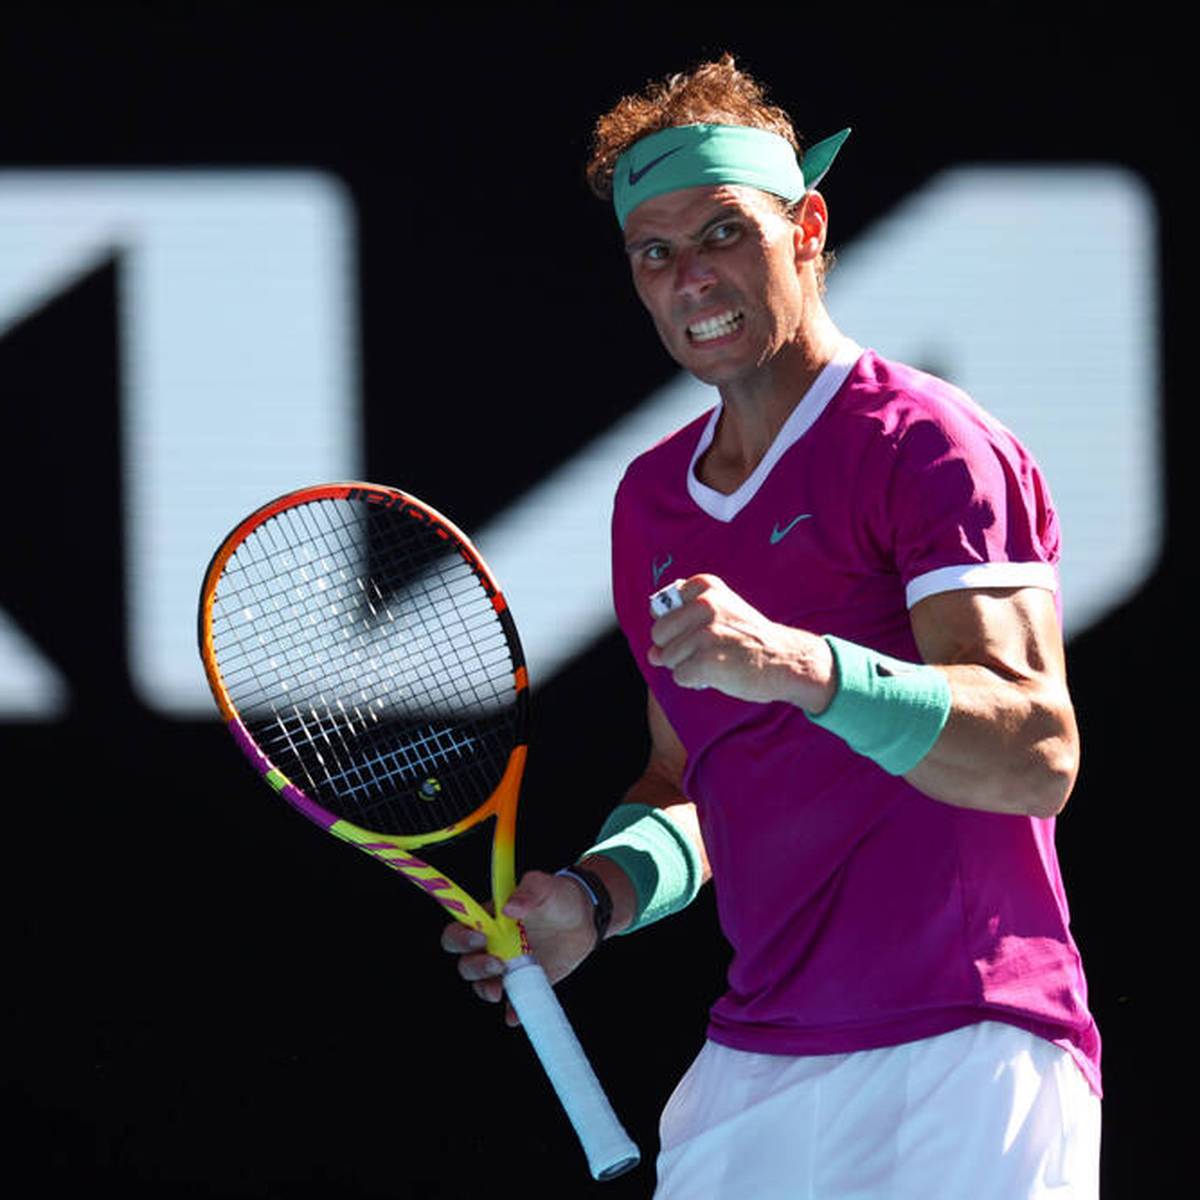 Rafael Nadal ist in das Halbfinale der Australian Open eingezogen. Dabei hat der Spanier große Probleme gehabt.